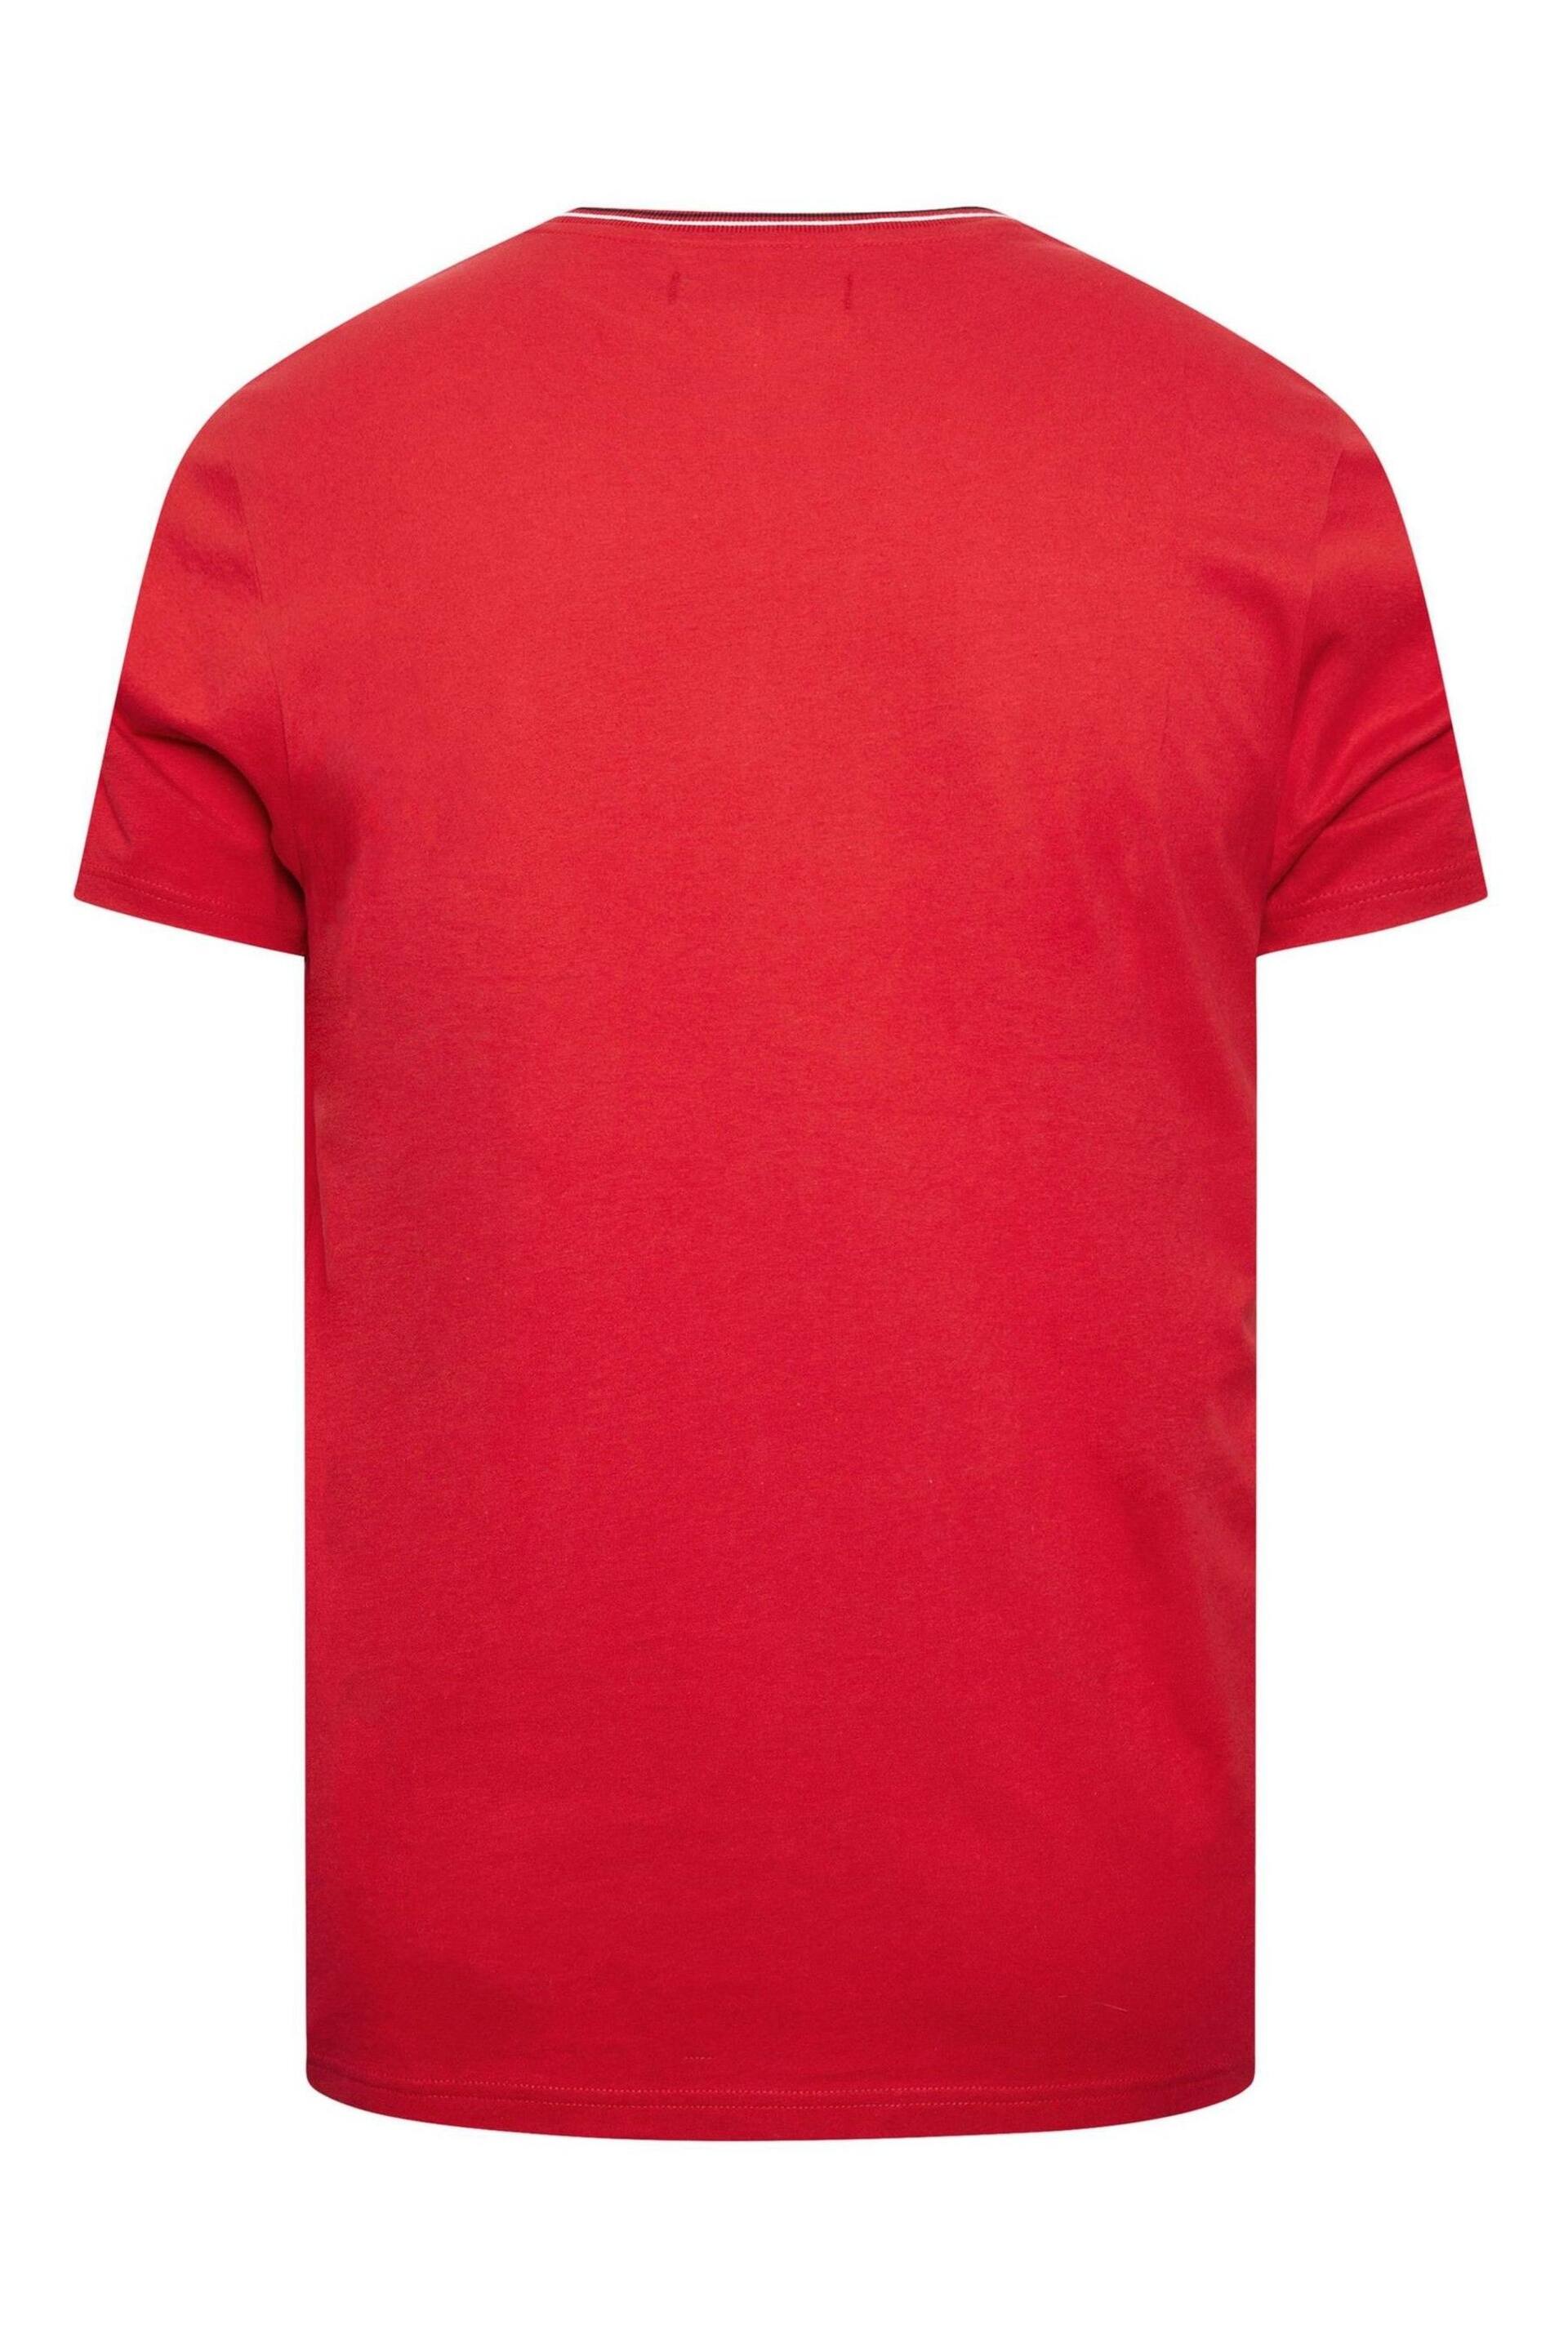 BadRhino Big & Tall Dark Red Chest Stripe T-Shirt - Image 3 of 3